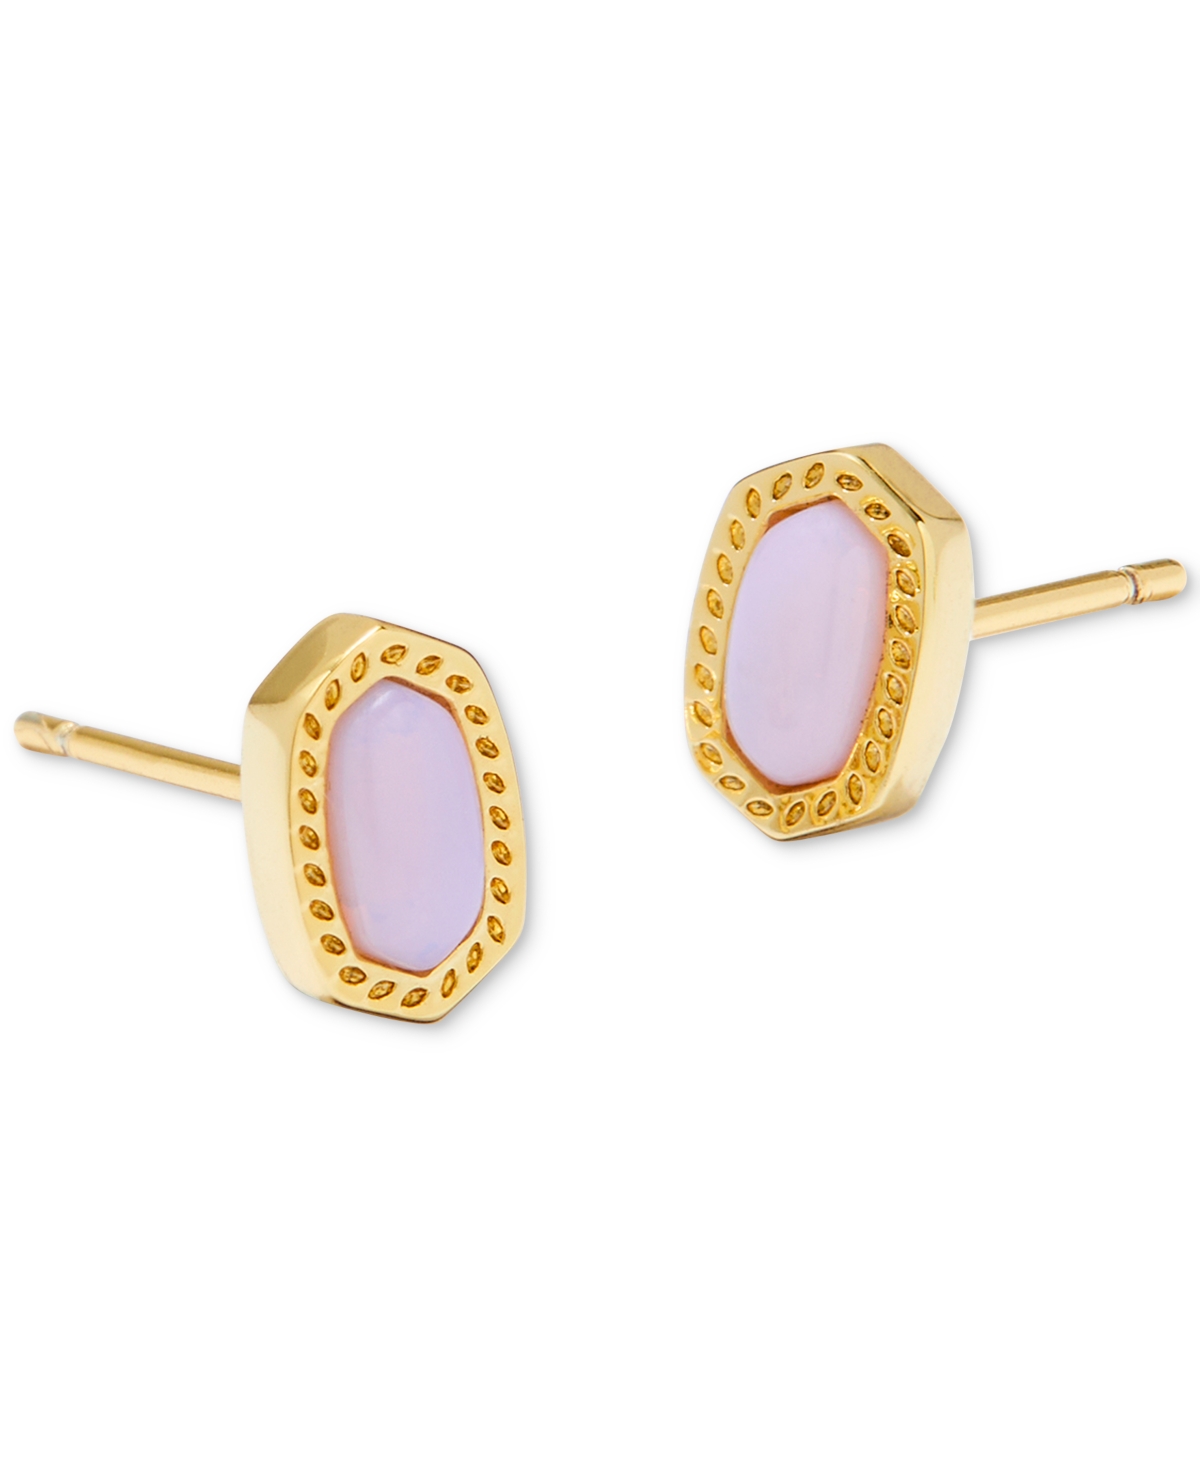 Kendra Scott 14k Gold-plated Oval Stone Stud Earrings In Pink Opalite Crystal